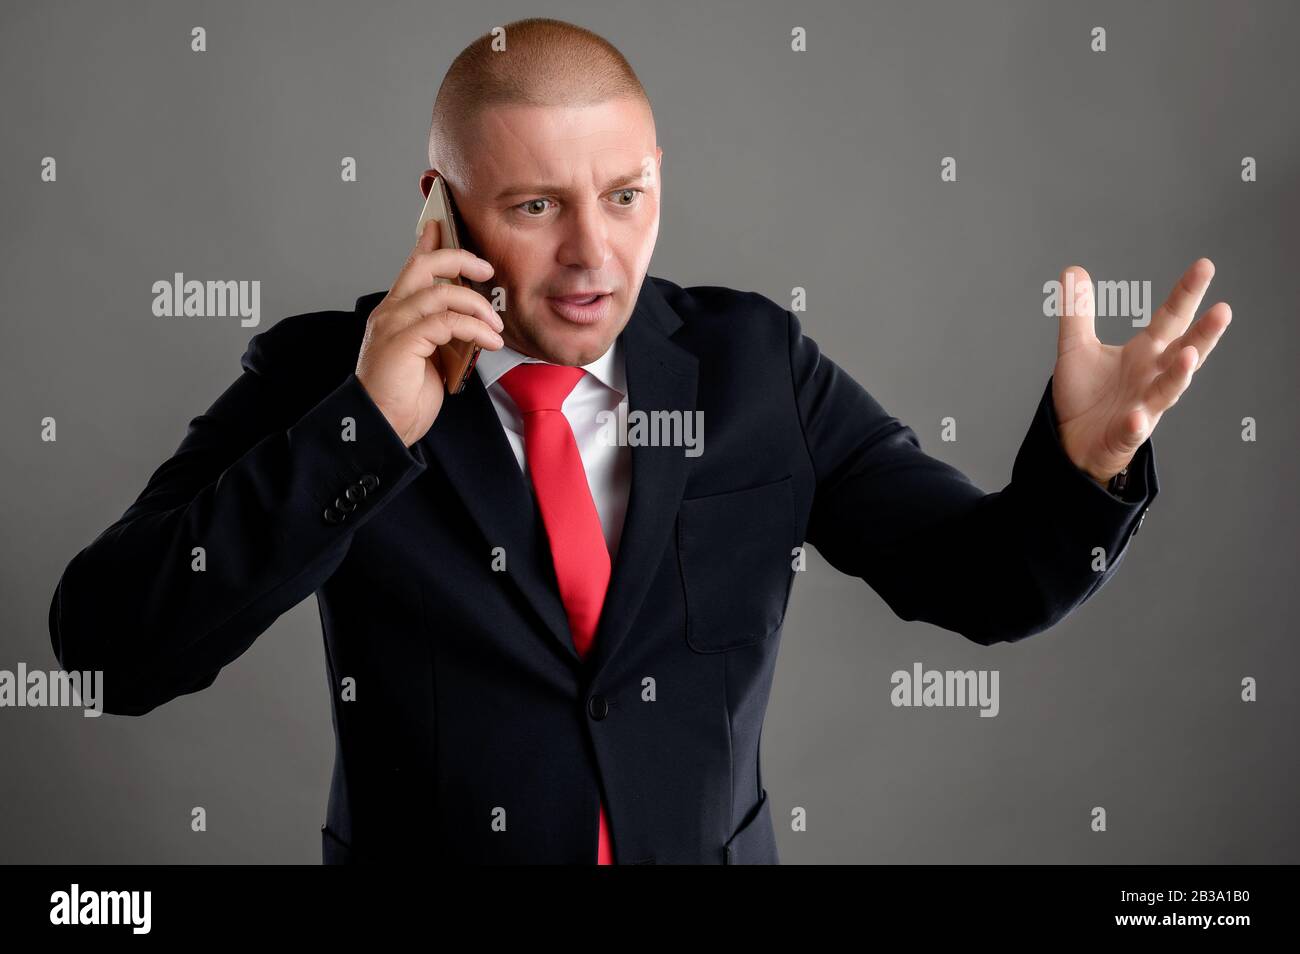 Der in schwarzem Anzug gekleidete Geschäftsmann, der am Telefon spricht, beginnt nervös mit der Hand herumzu gestikulieren Stockfoto